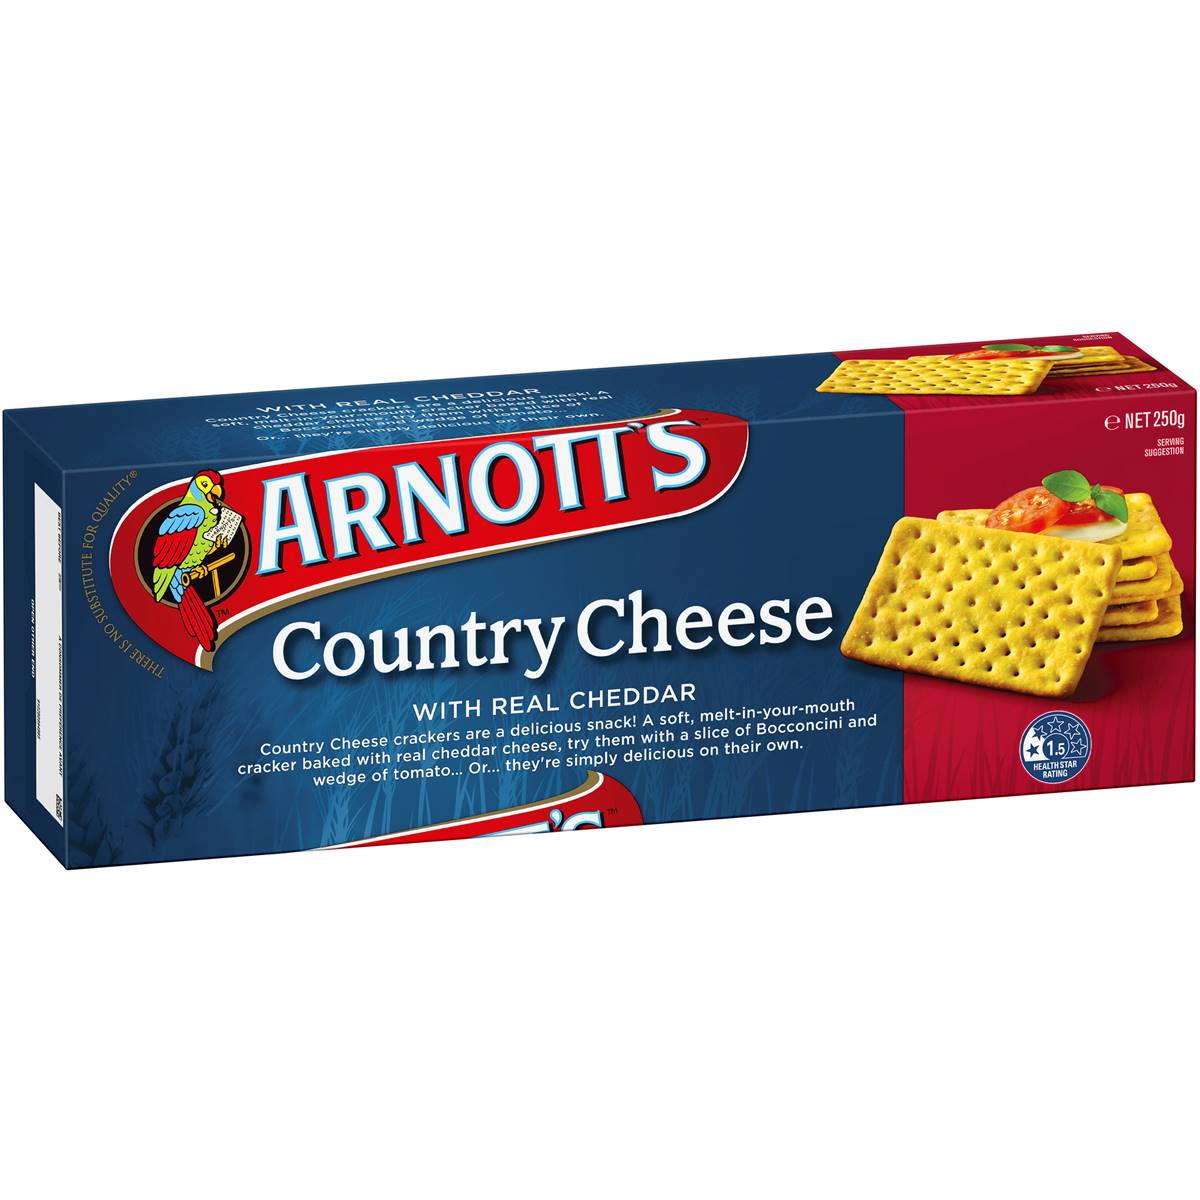 Arnott's Country Cheese 250g